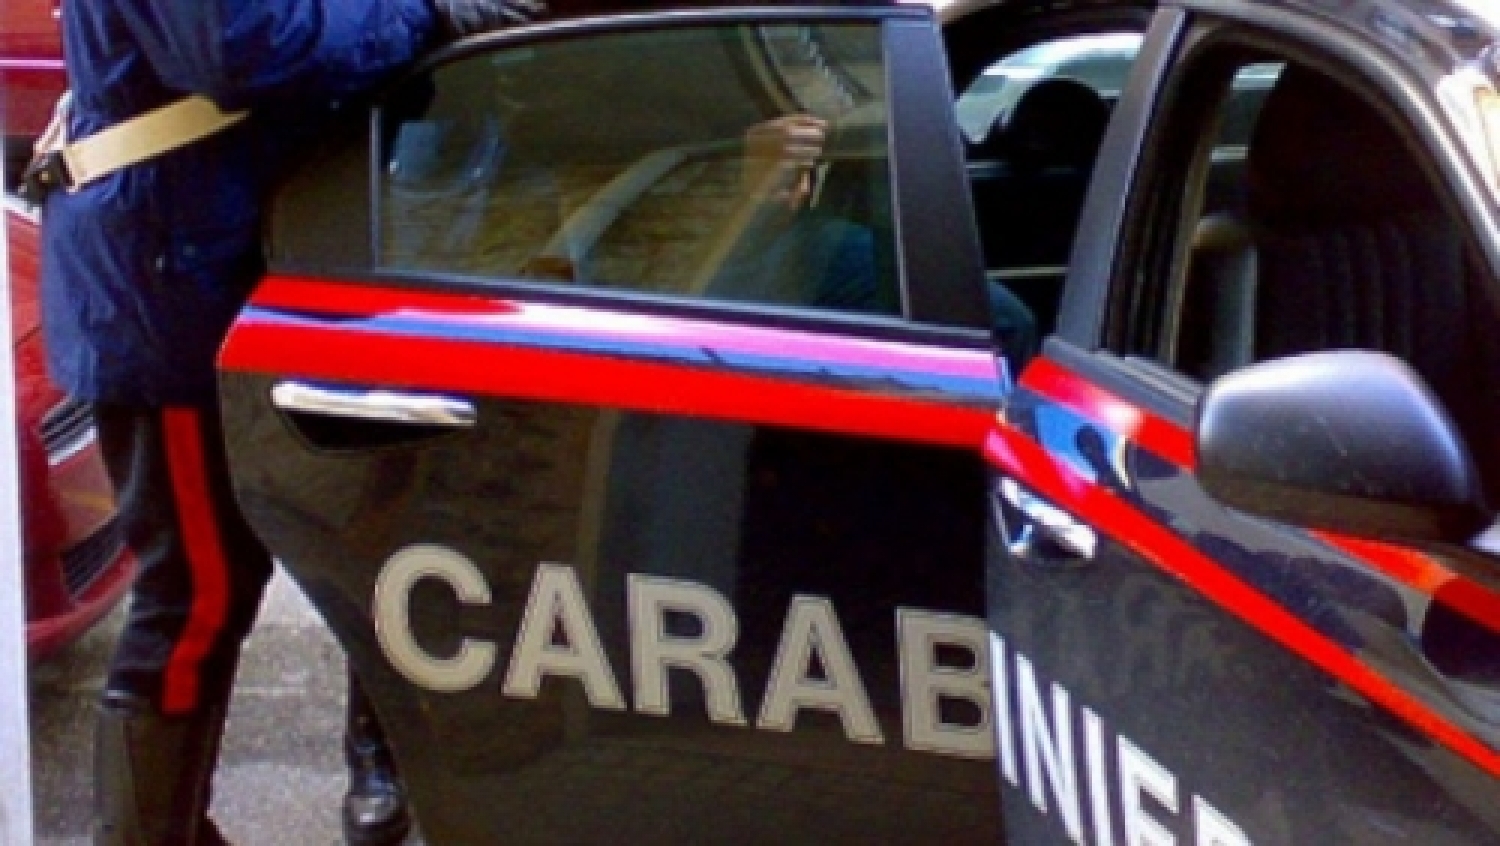 carabinieri-e1422974797526.jpg